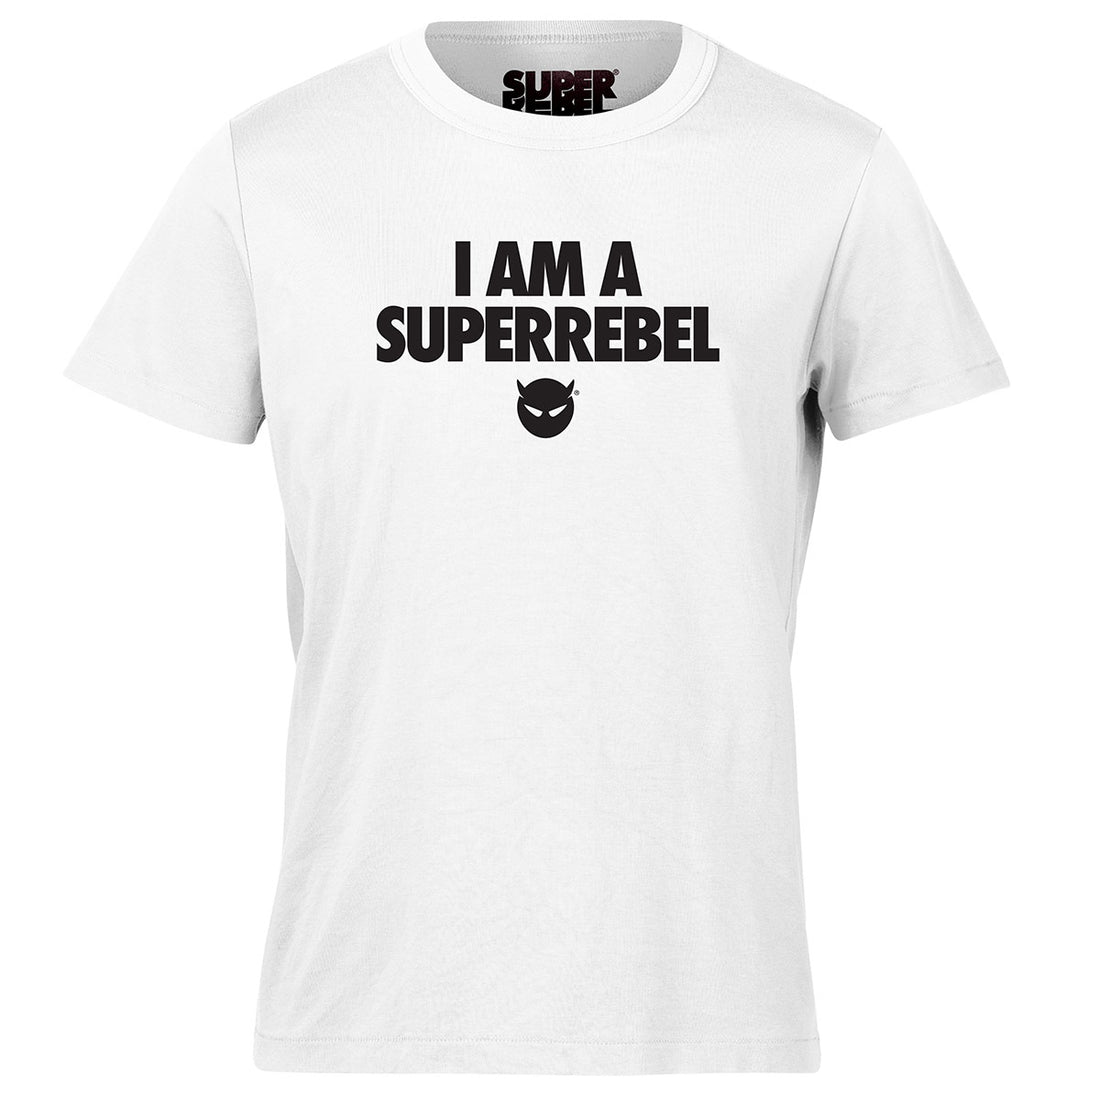 I AM A SUPERREBEL SHIRT